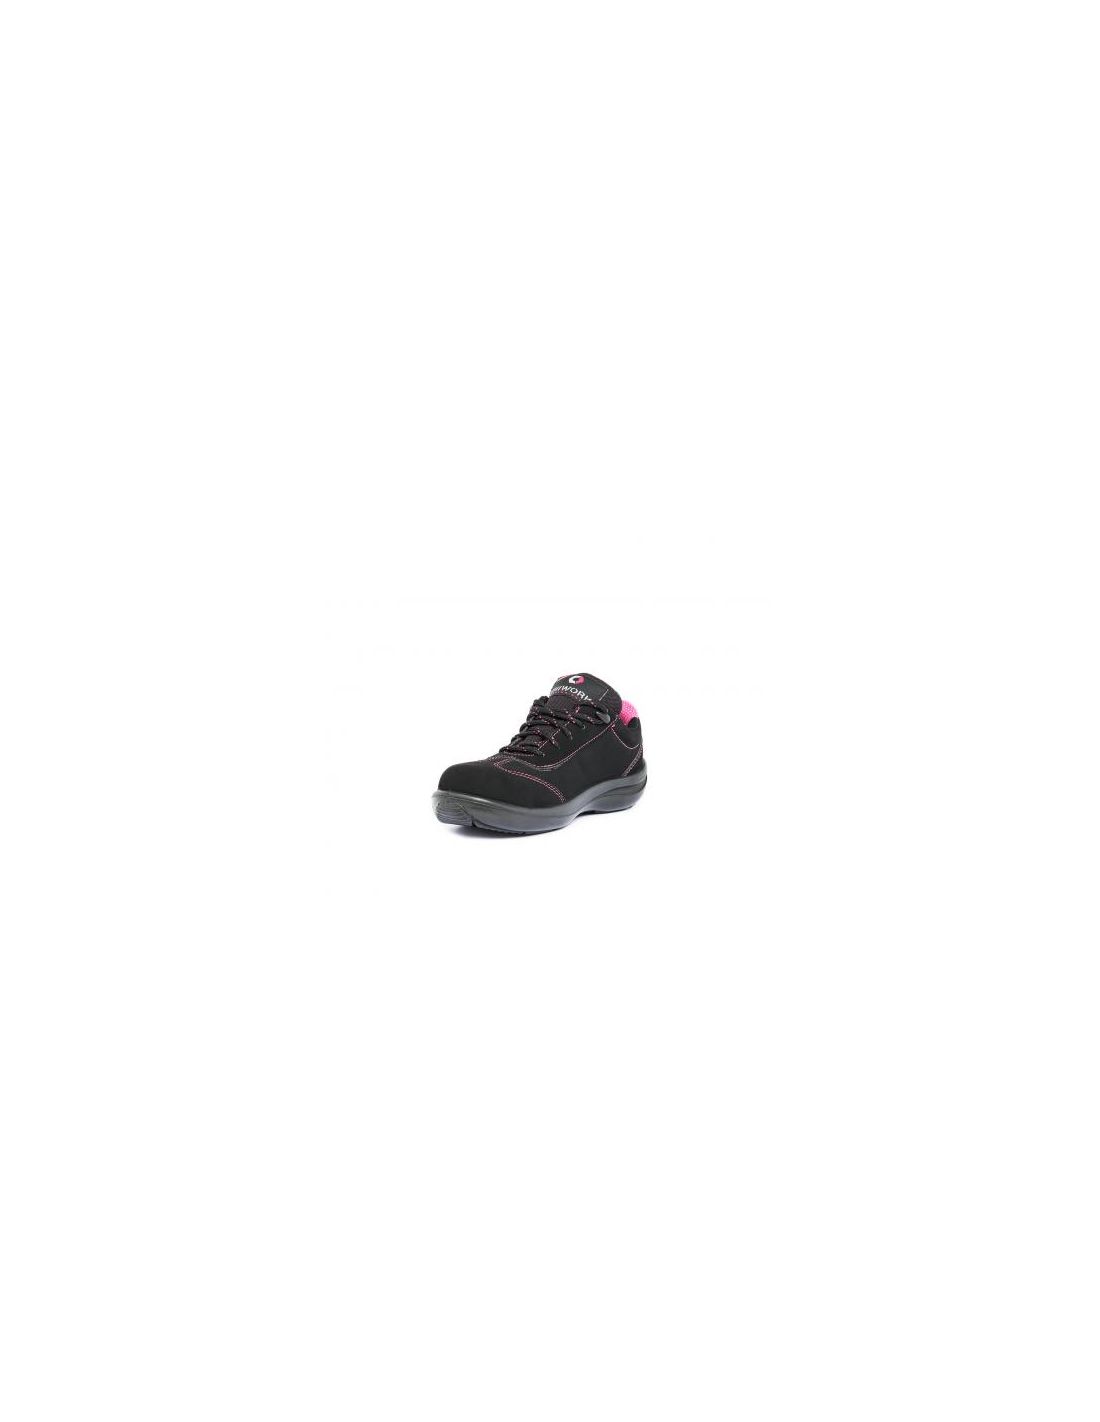 Chaussures de sécurité LOLITA S3 SRC UNIWORK vue 3/4 profil coté gauche